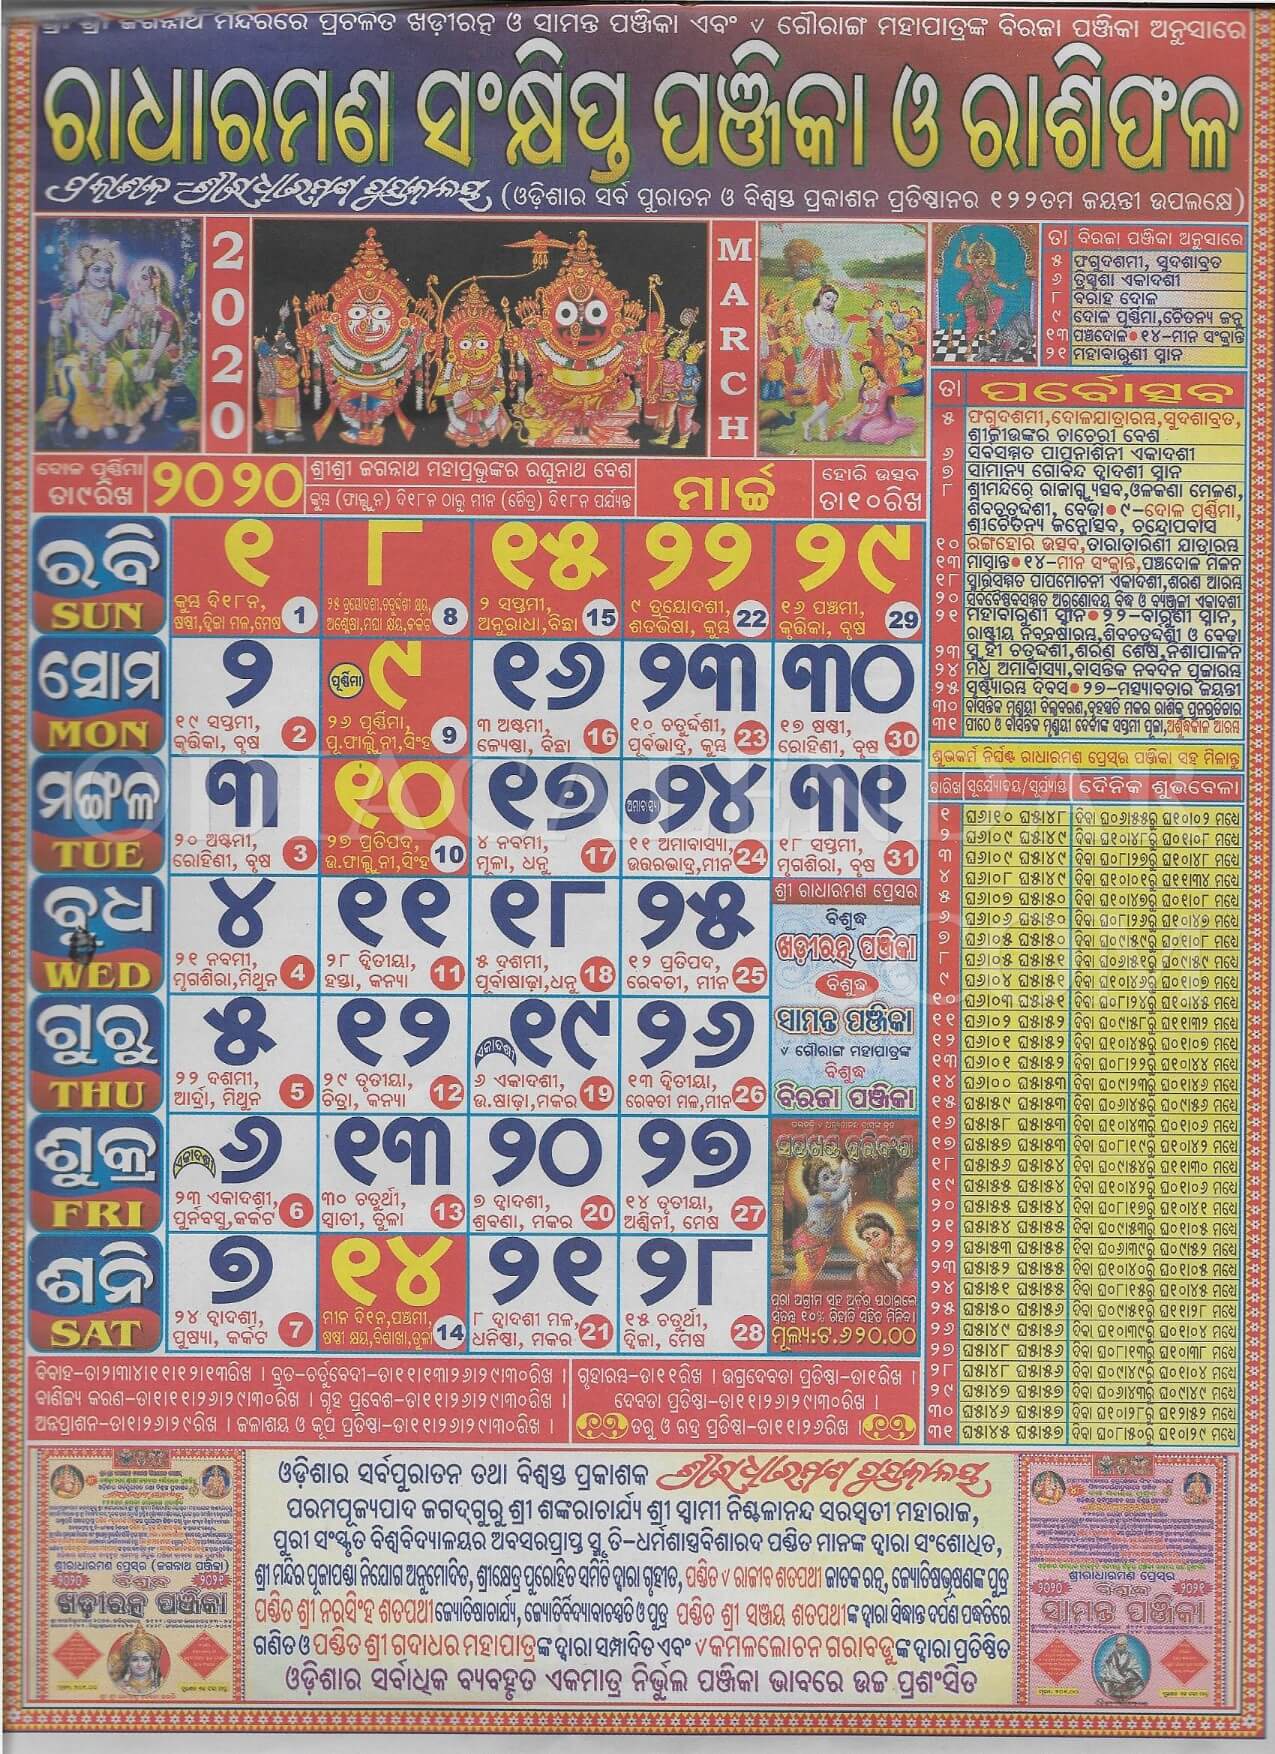 Radharaman Calendar 2020 March